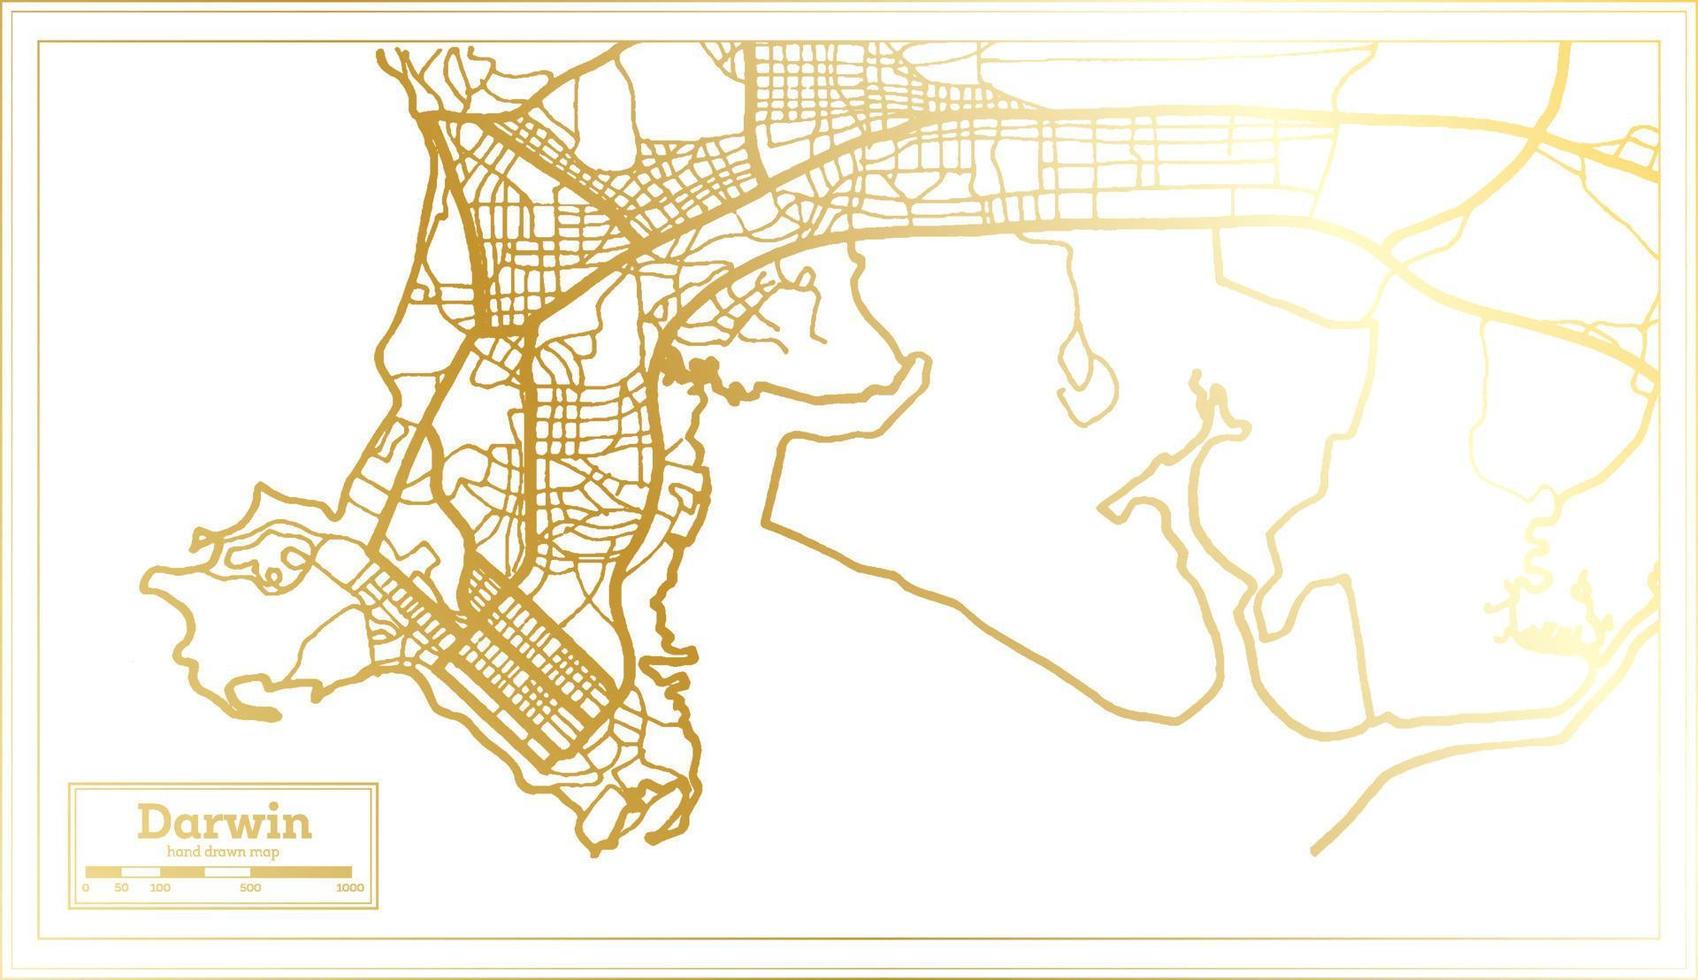 Darwin Australië stad kaart in retro stijl in gouden kleur. schets kaart. vector